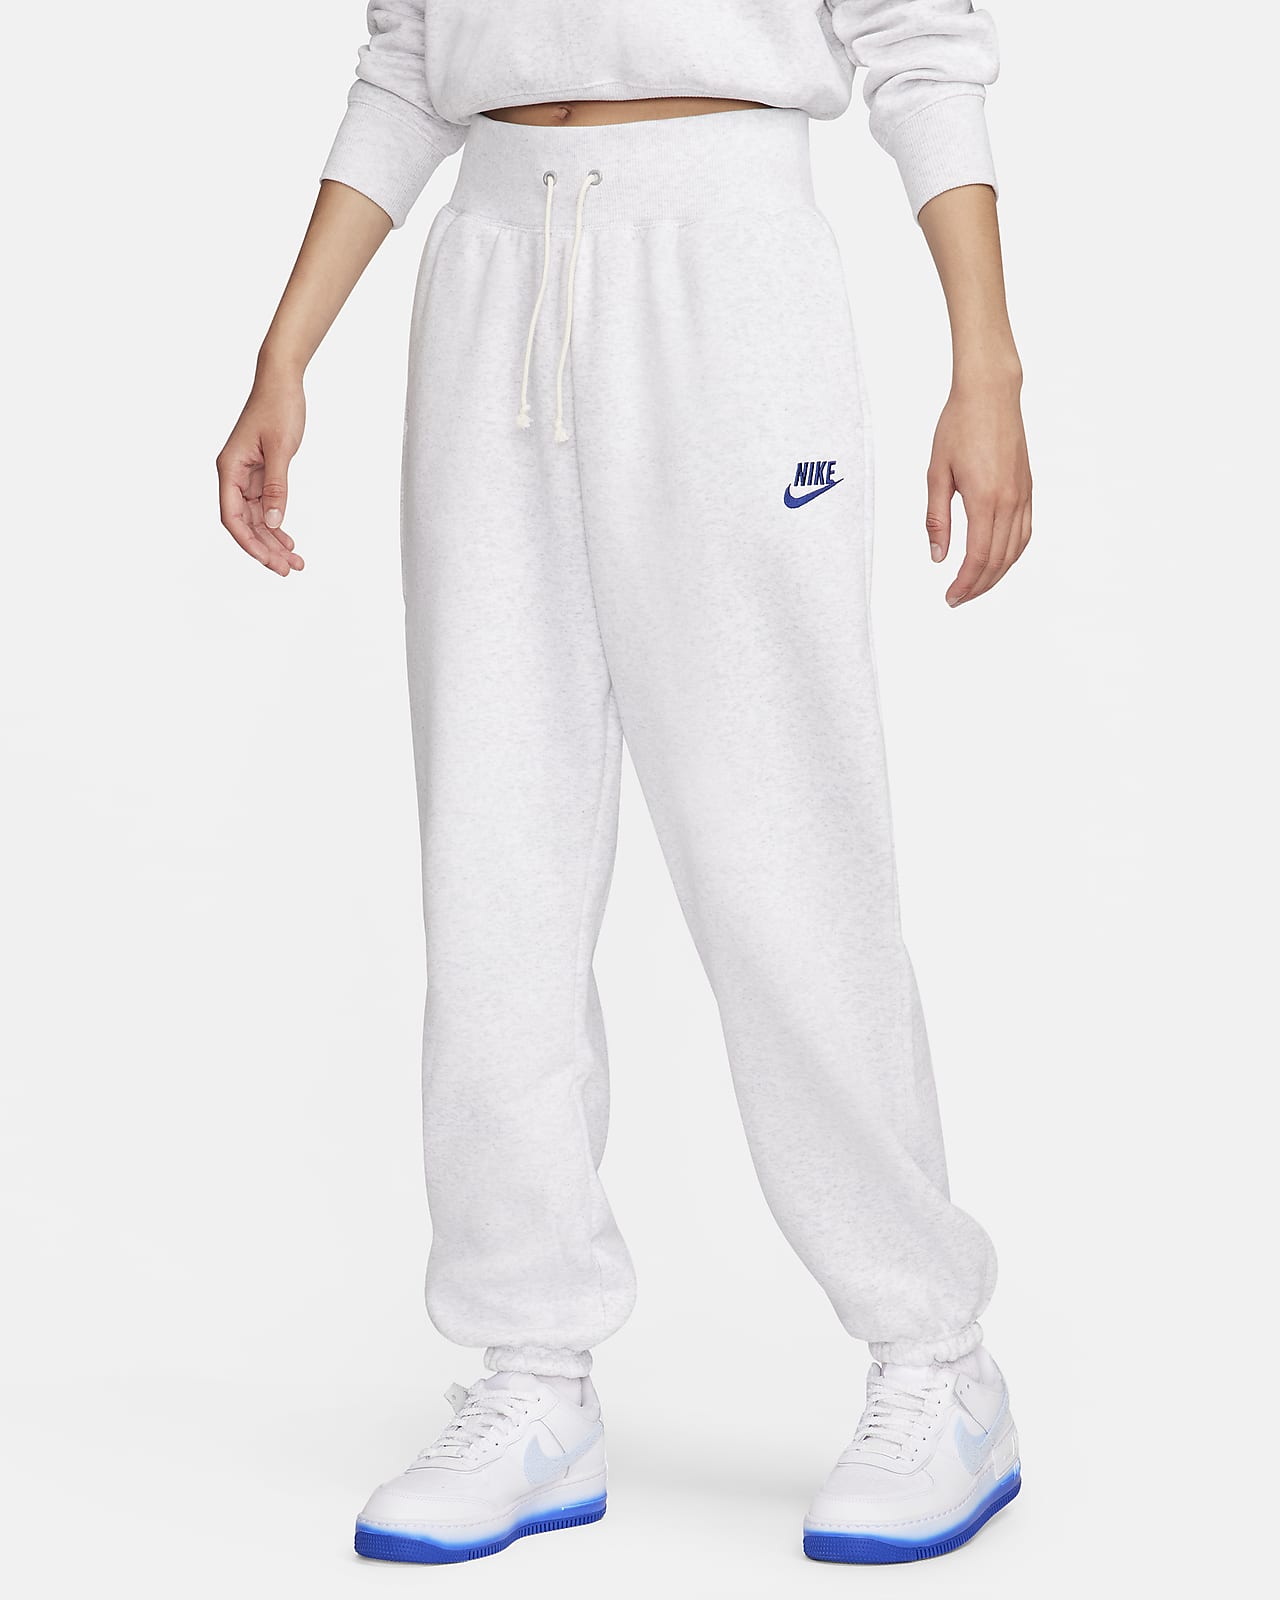 Nike Sportswear Women\'s High-Waisted Oversized Fleece Sweatpants.